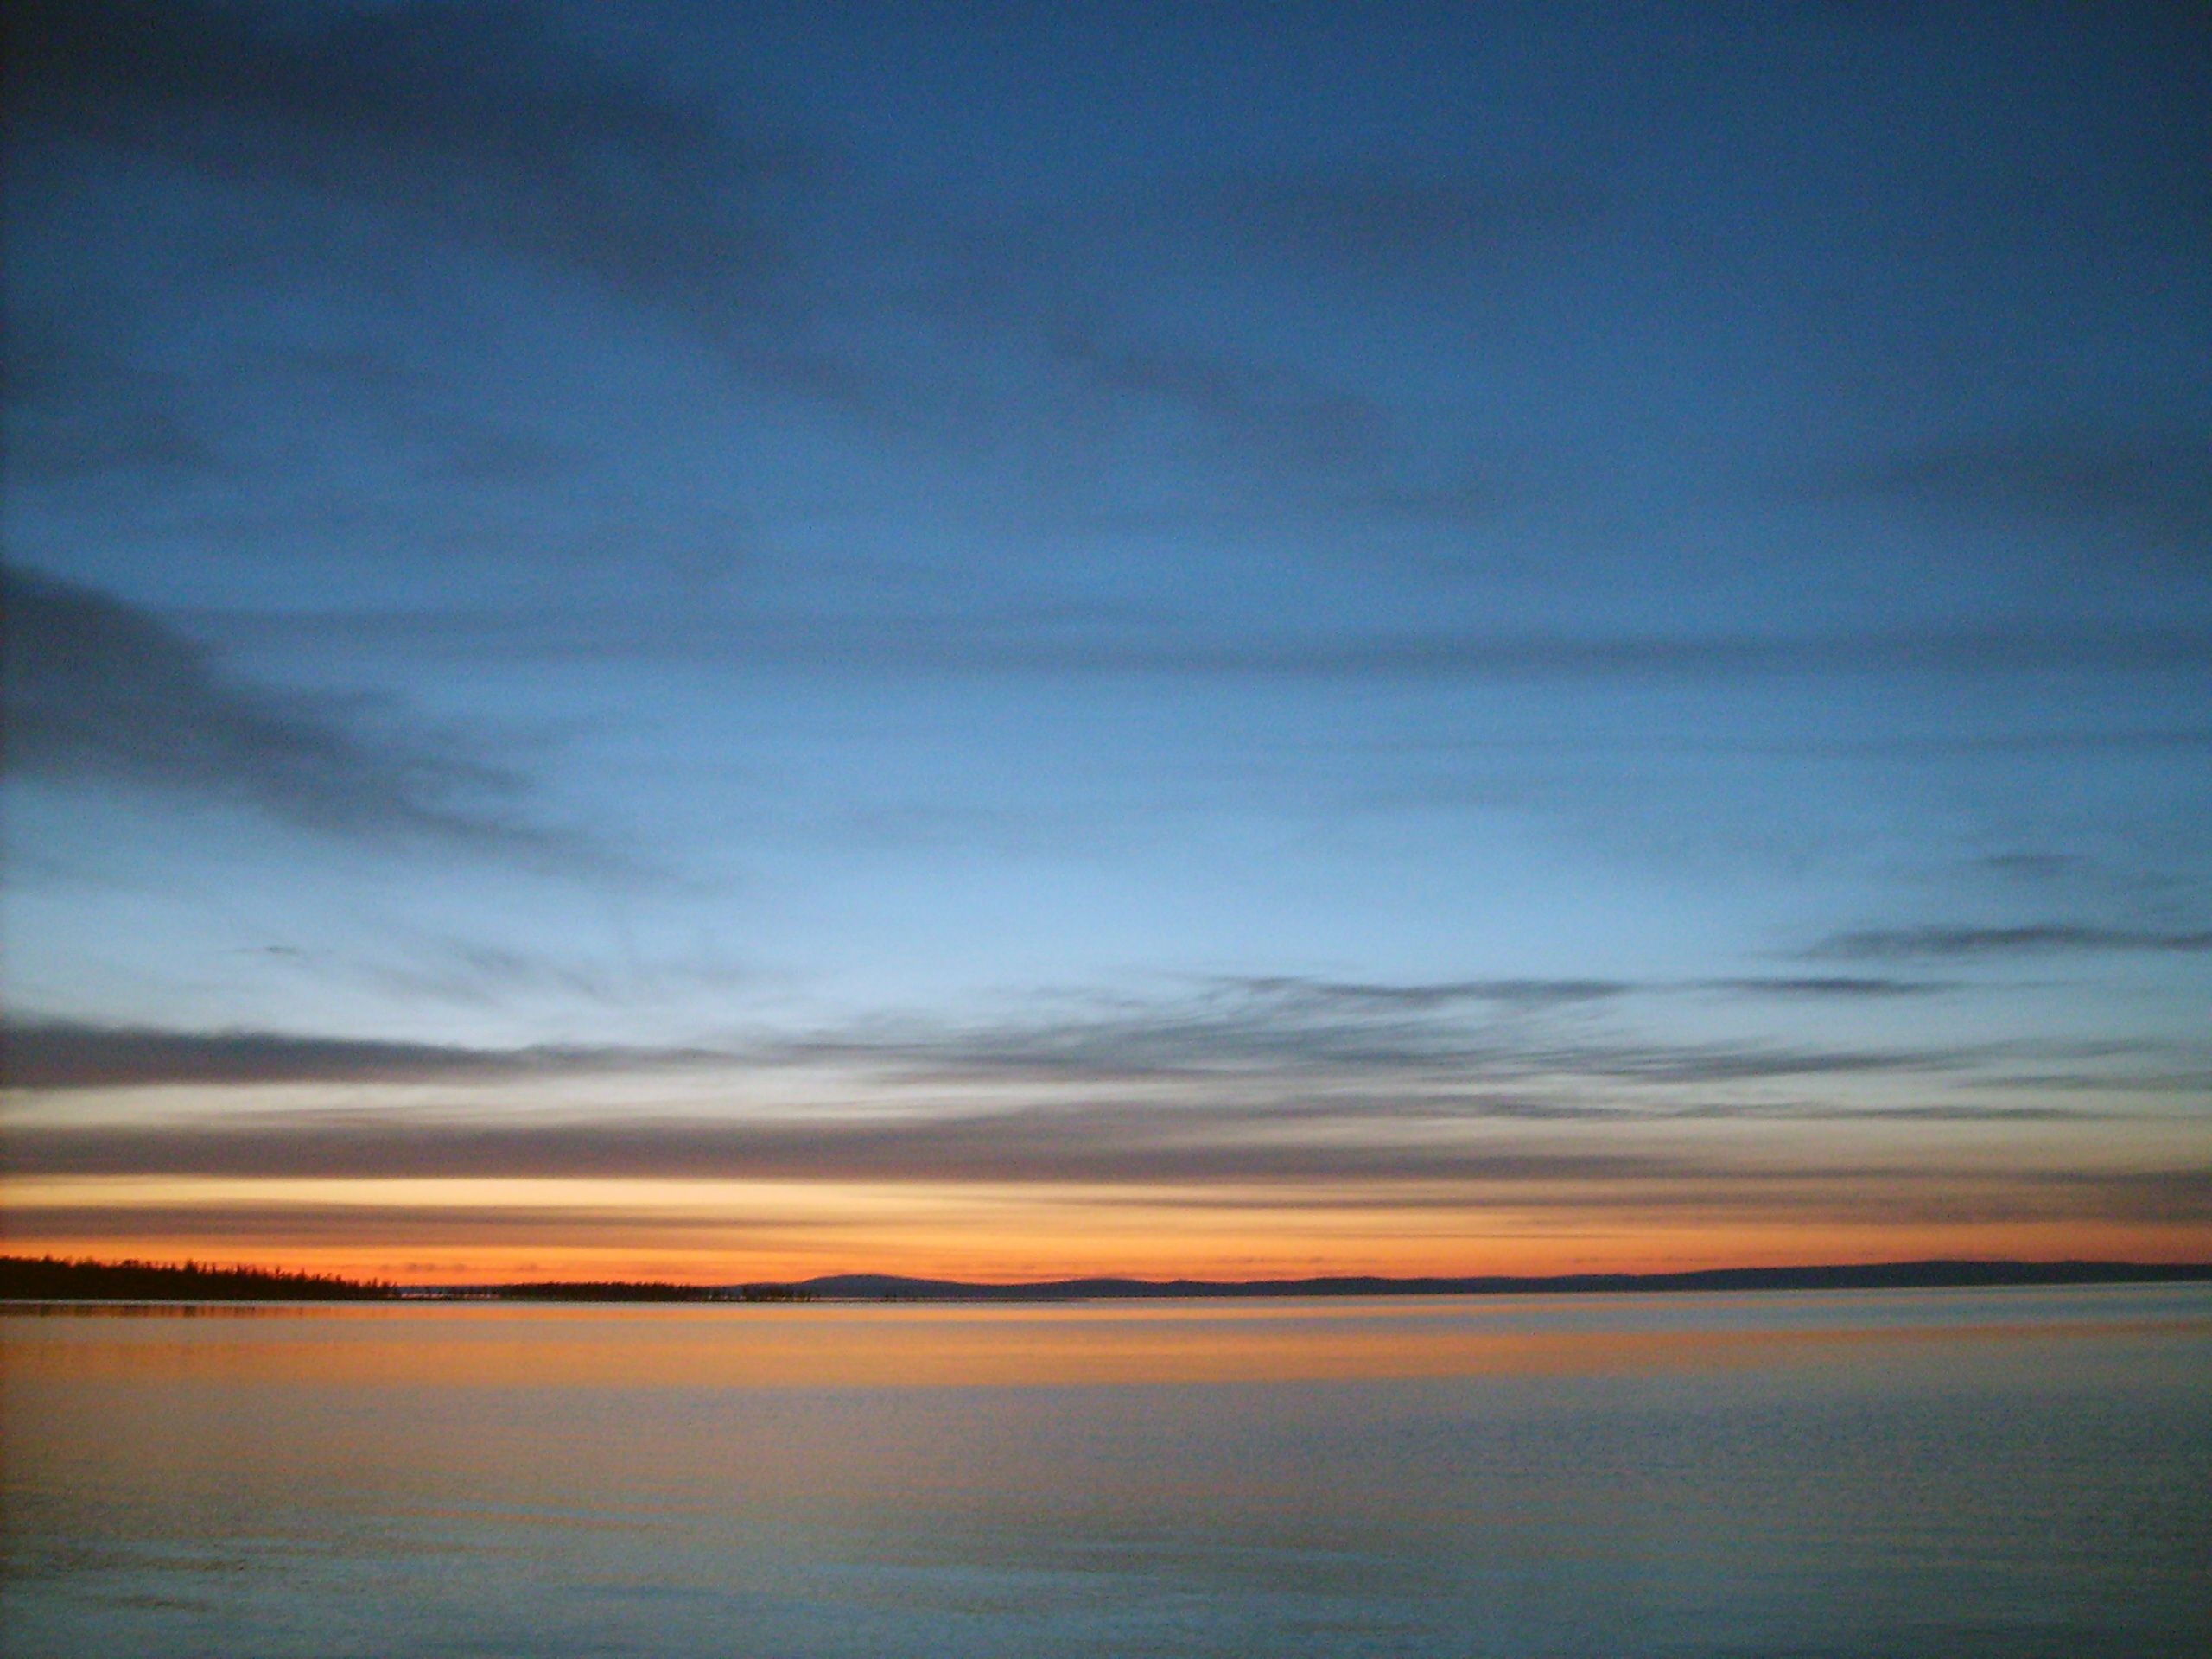 Free Image: Evening On The Lake | Libreshot Public Domain Photos